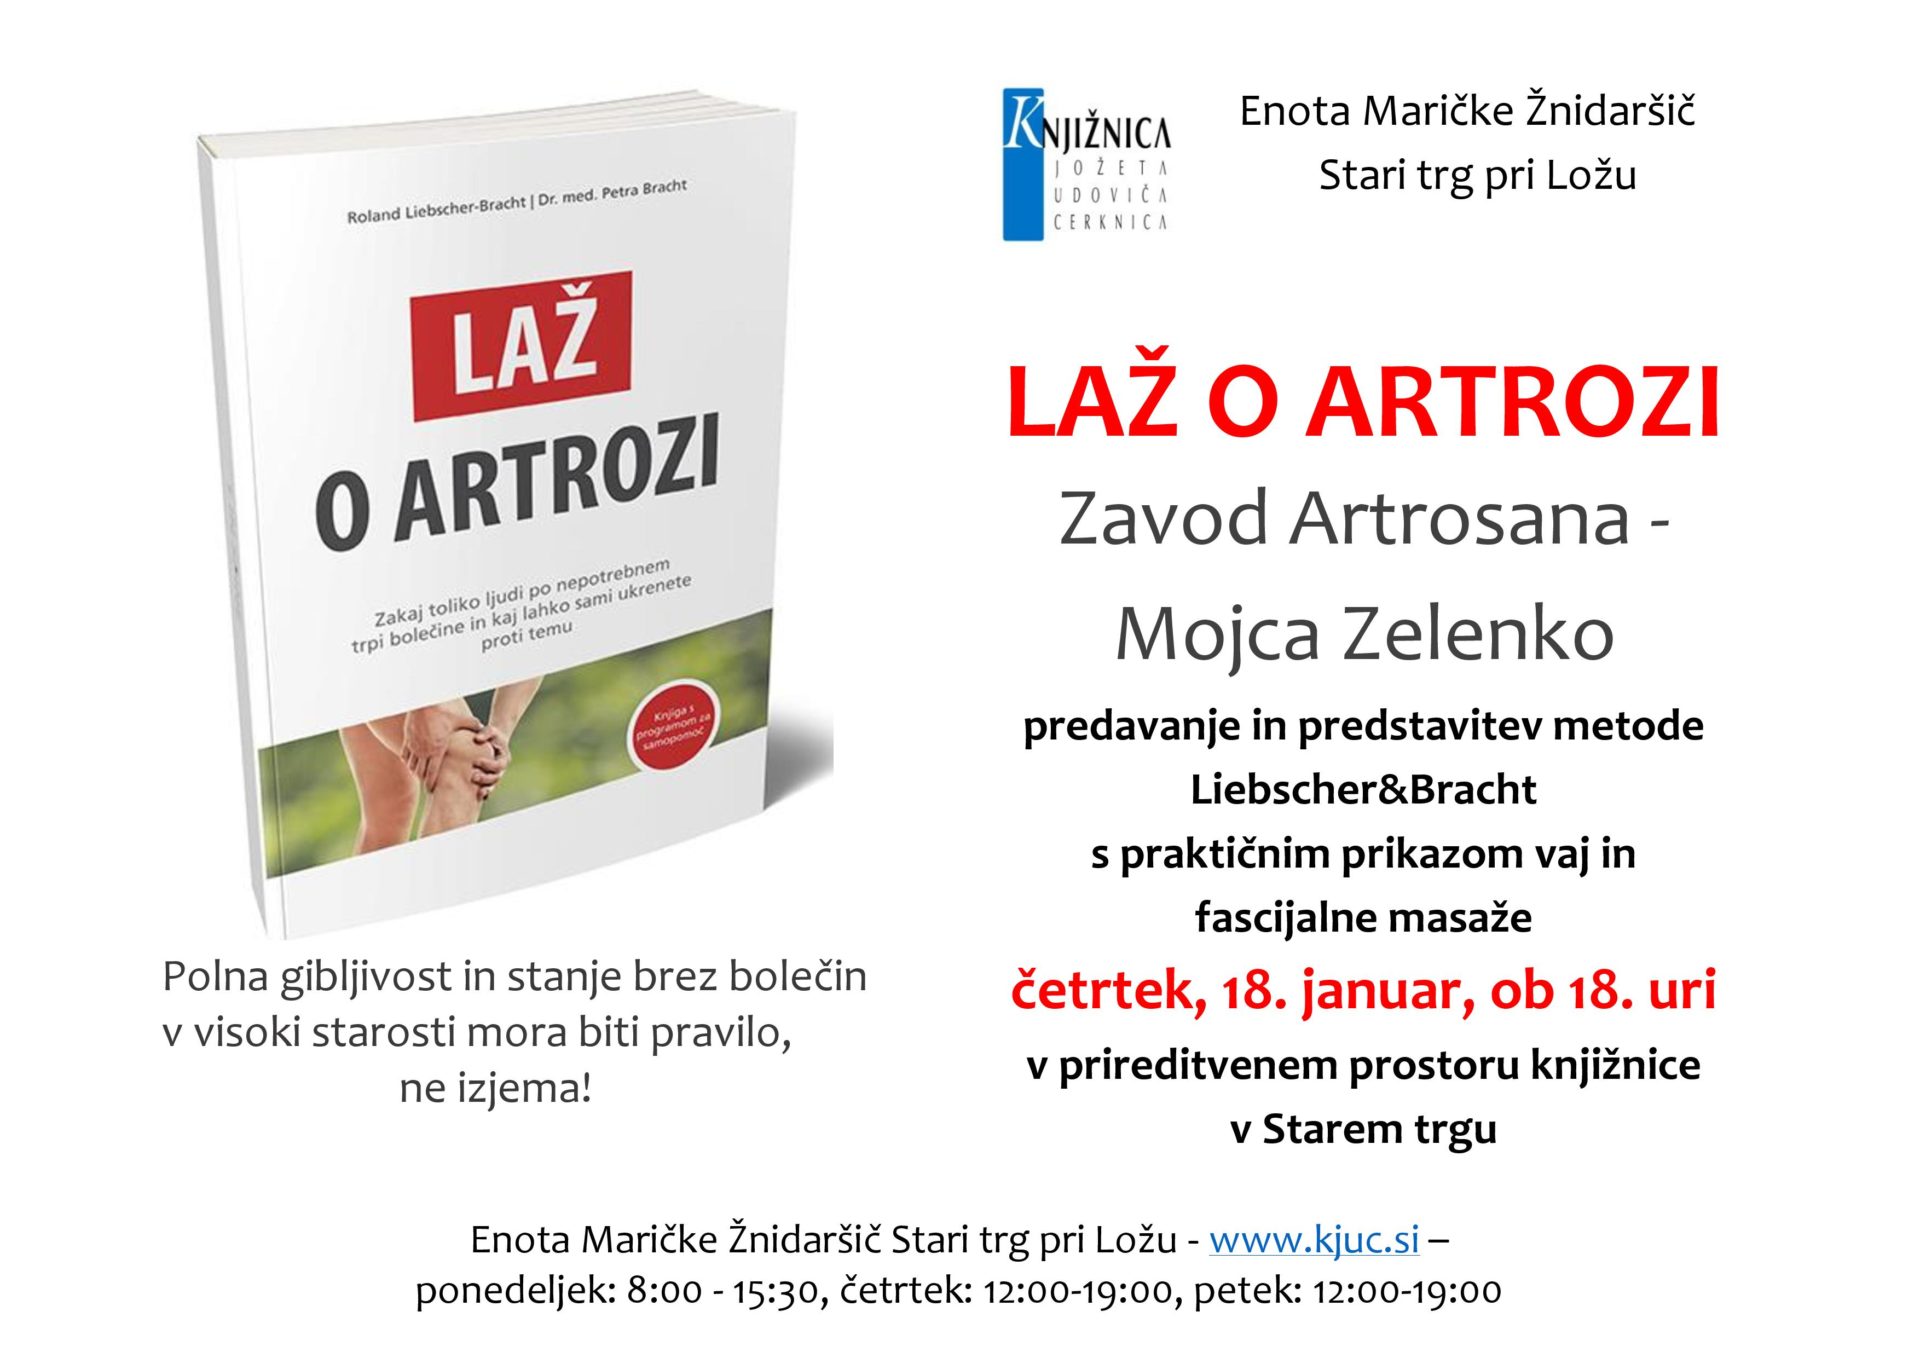 Laz o artrozi page 001 - Artrosana, Mojca Zelenko: Laž o artrozi - predavanje in predstavitev knjige